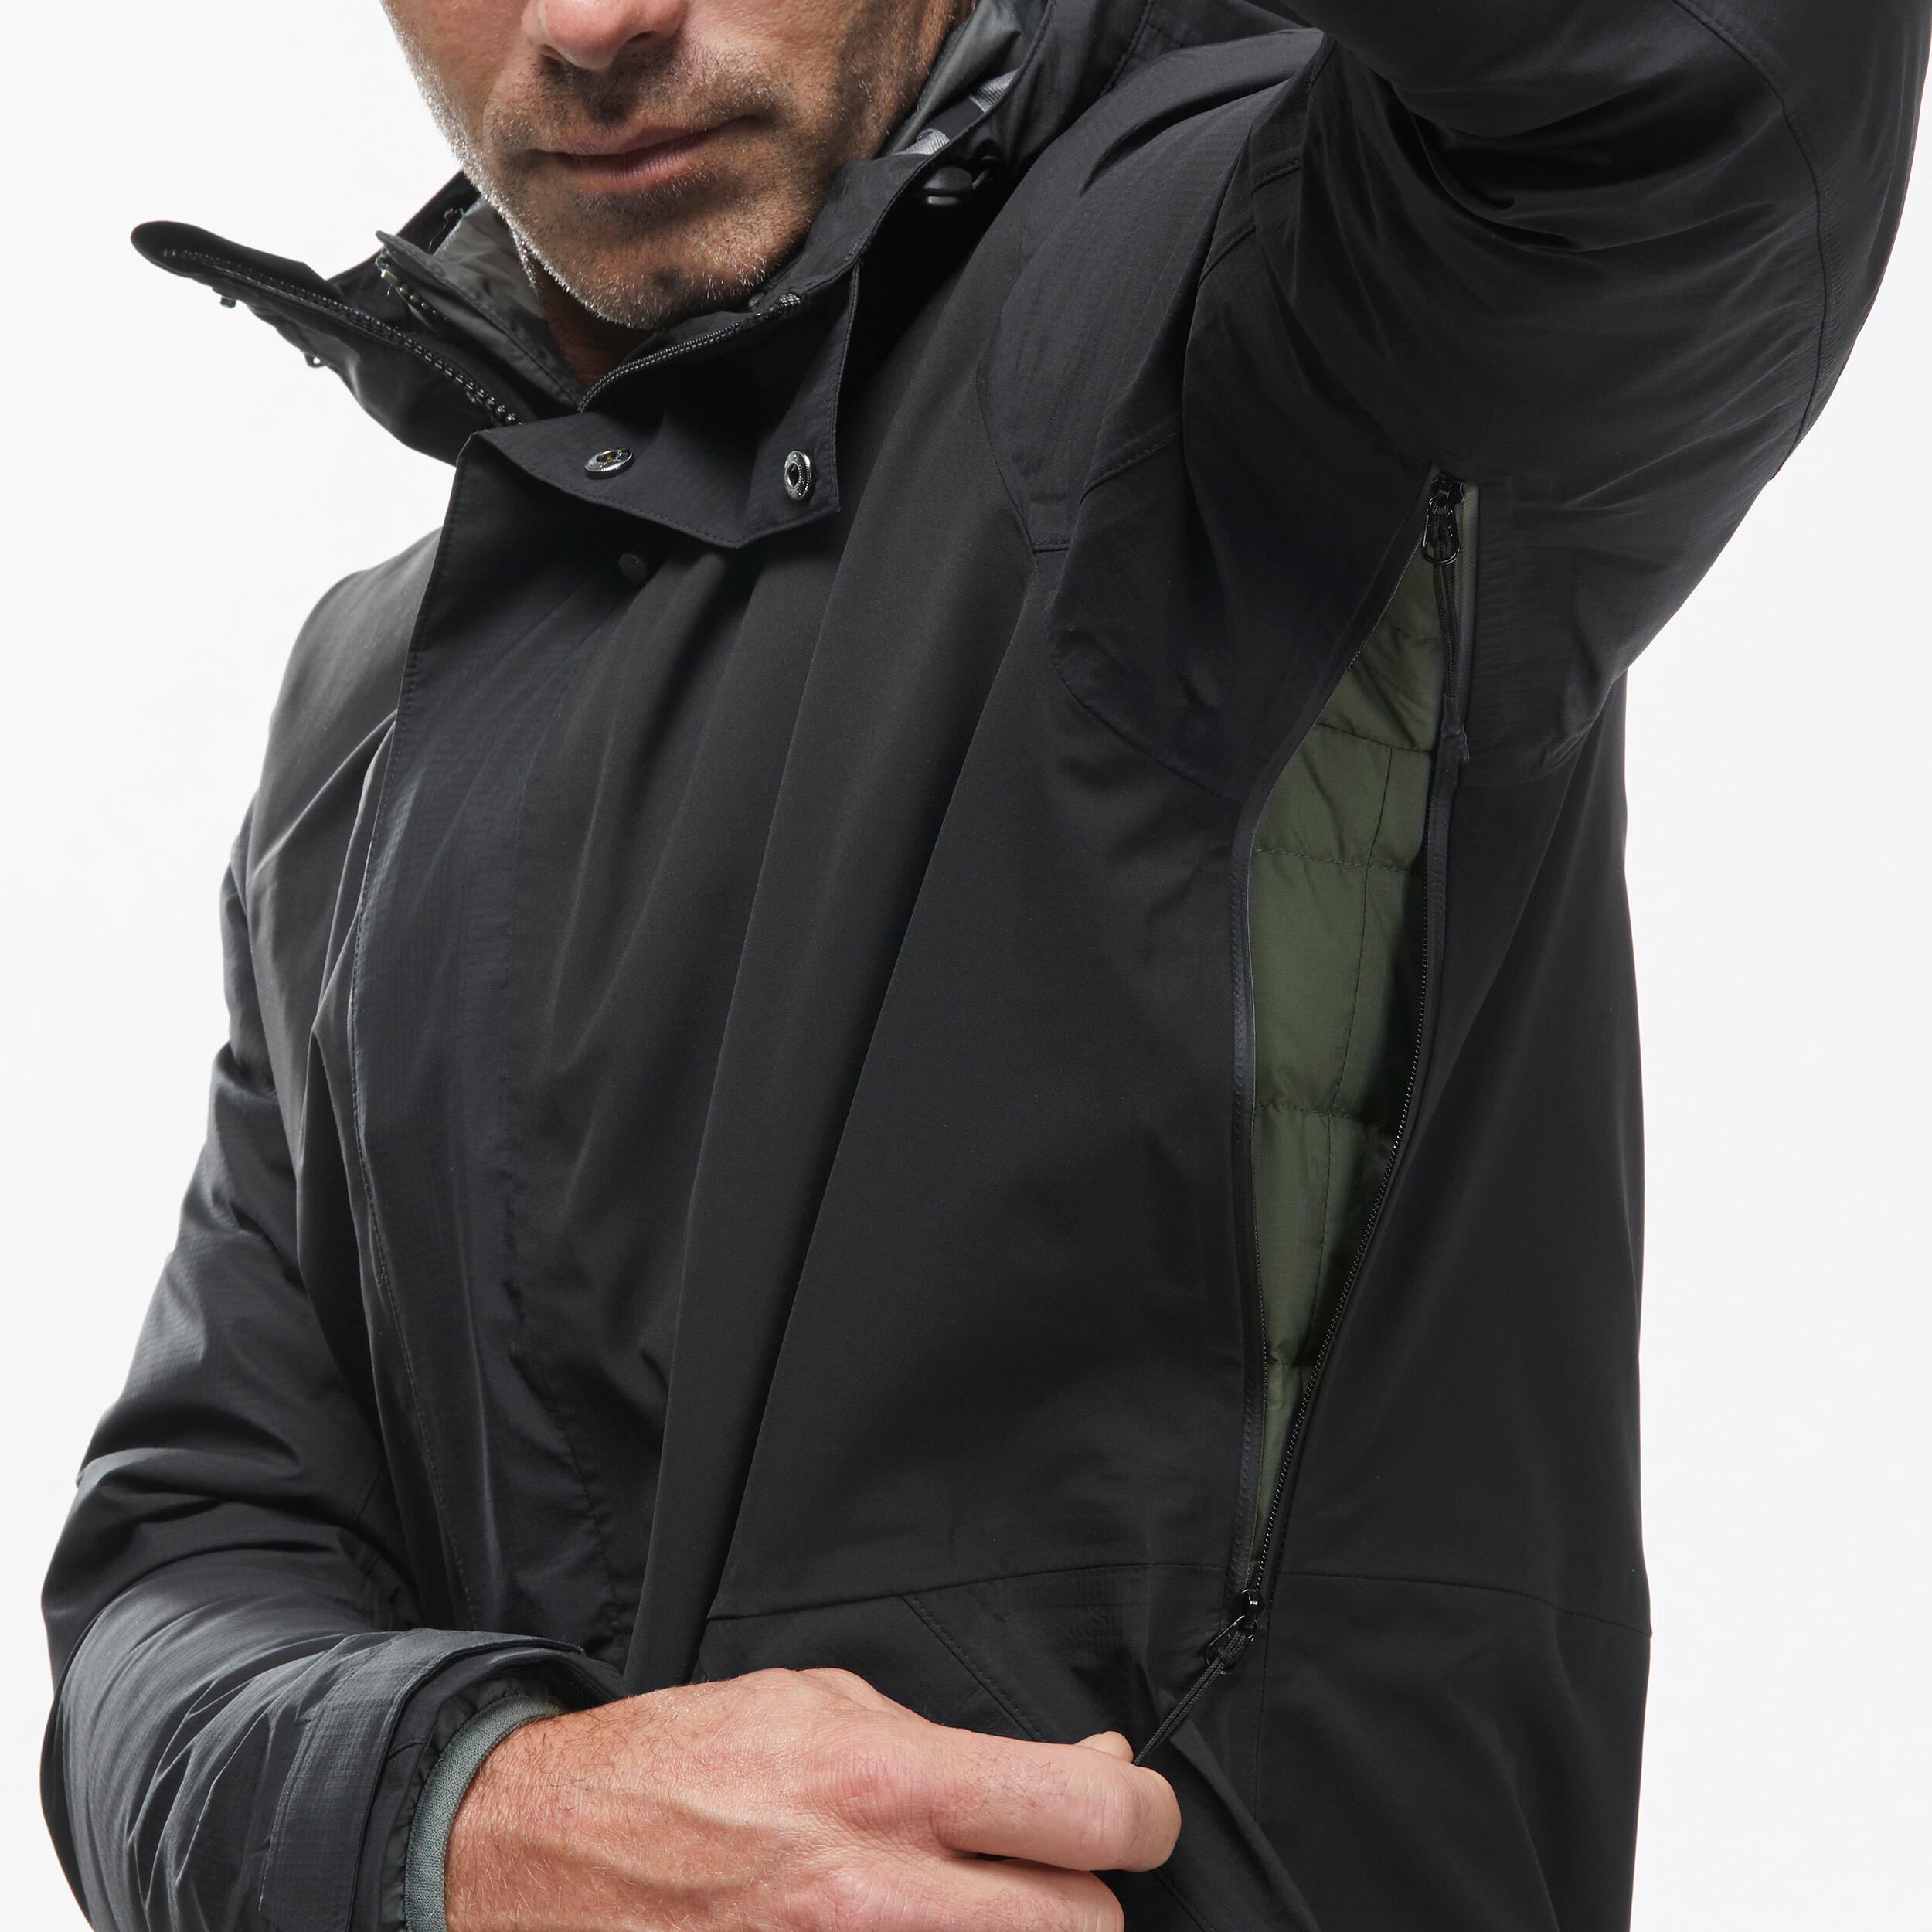 Men’s 3-in-1 Waterproof Travel Trekking Jacket Travel 900 Compact -10°C - Black  12/18